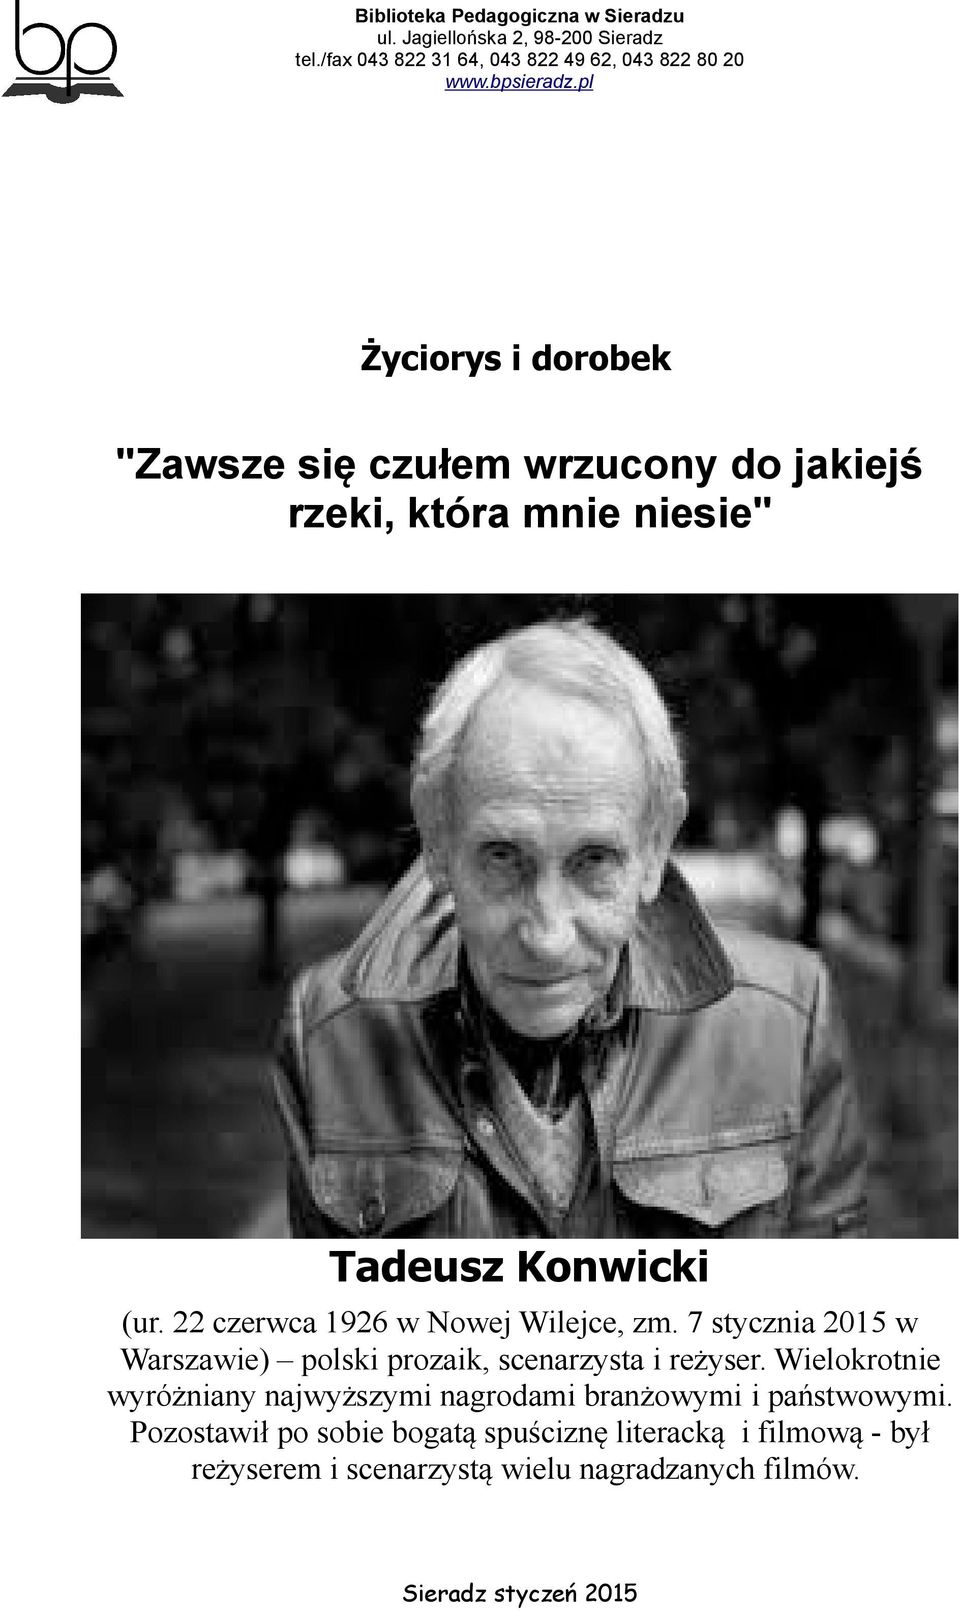 7 stycznia 2015 w Warszawie) polski prozaik, scenarzysta i reżyser.